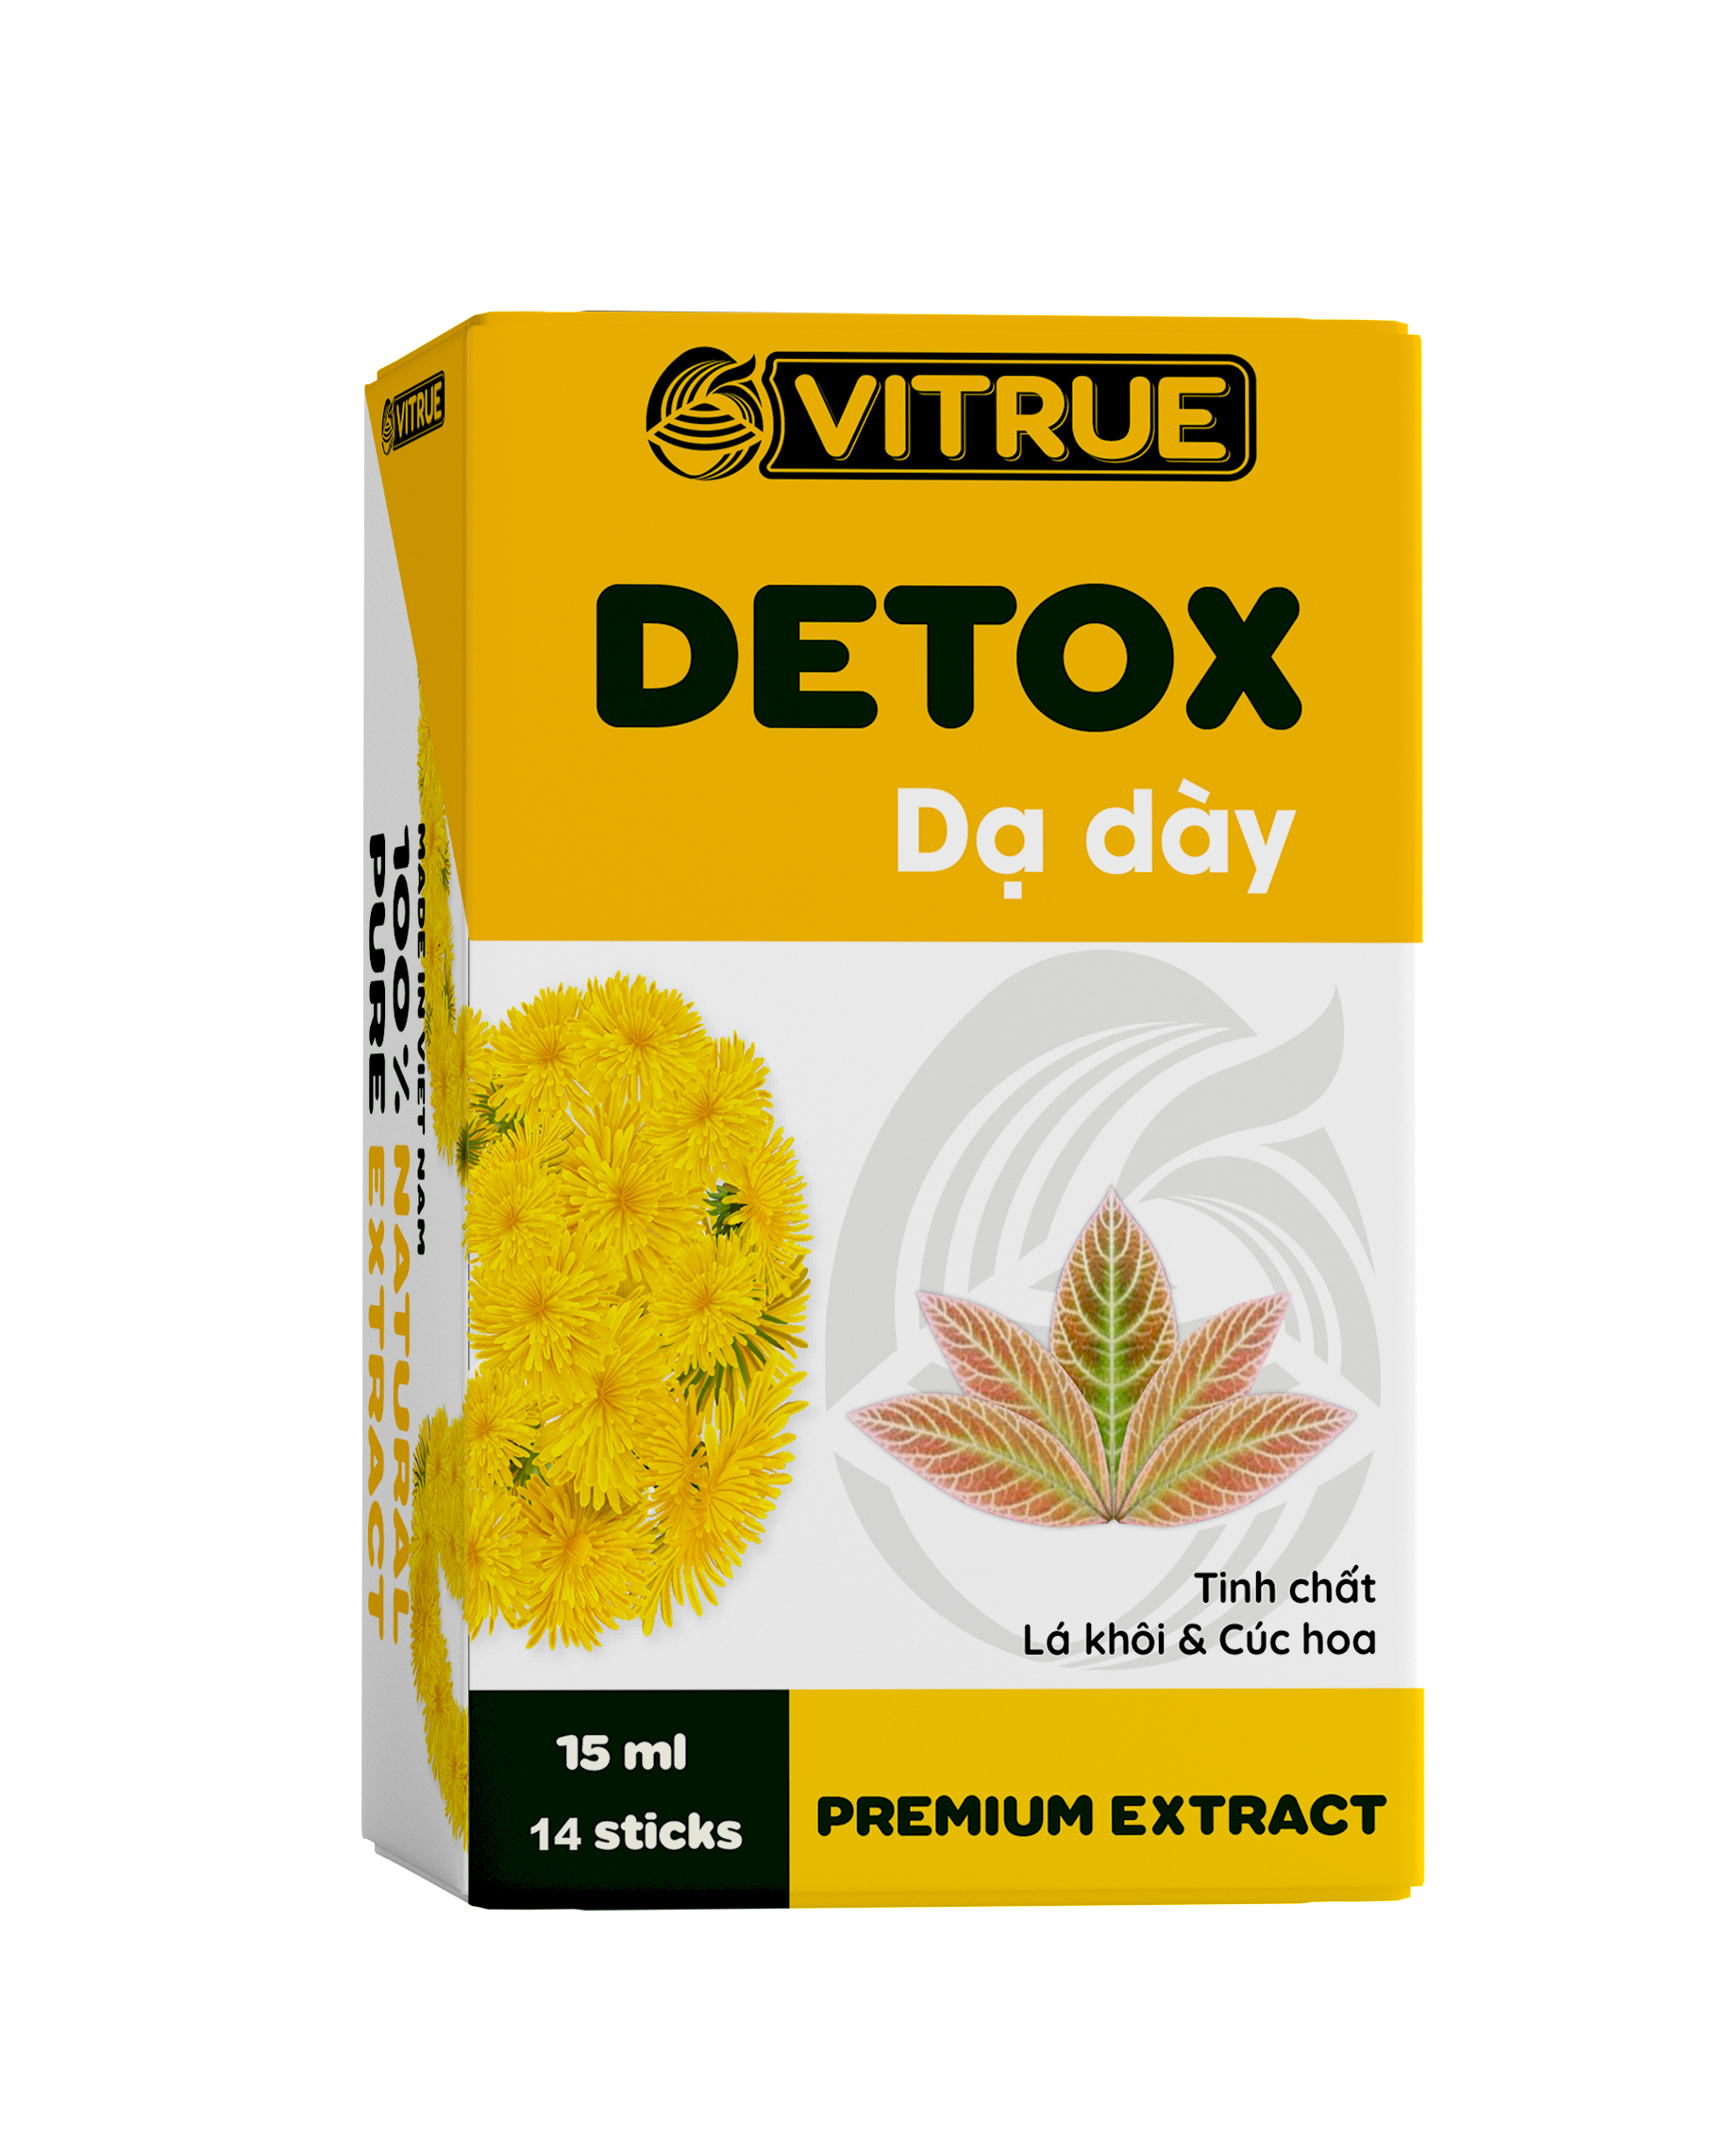 VITRUE Detox dạ dày hộp 14 gói, giúp đào thải độc tố và bảo vệ dạ dày